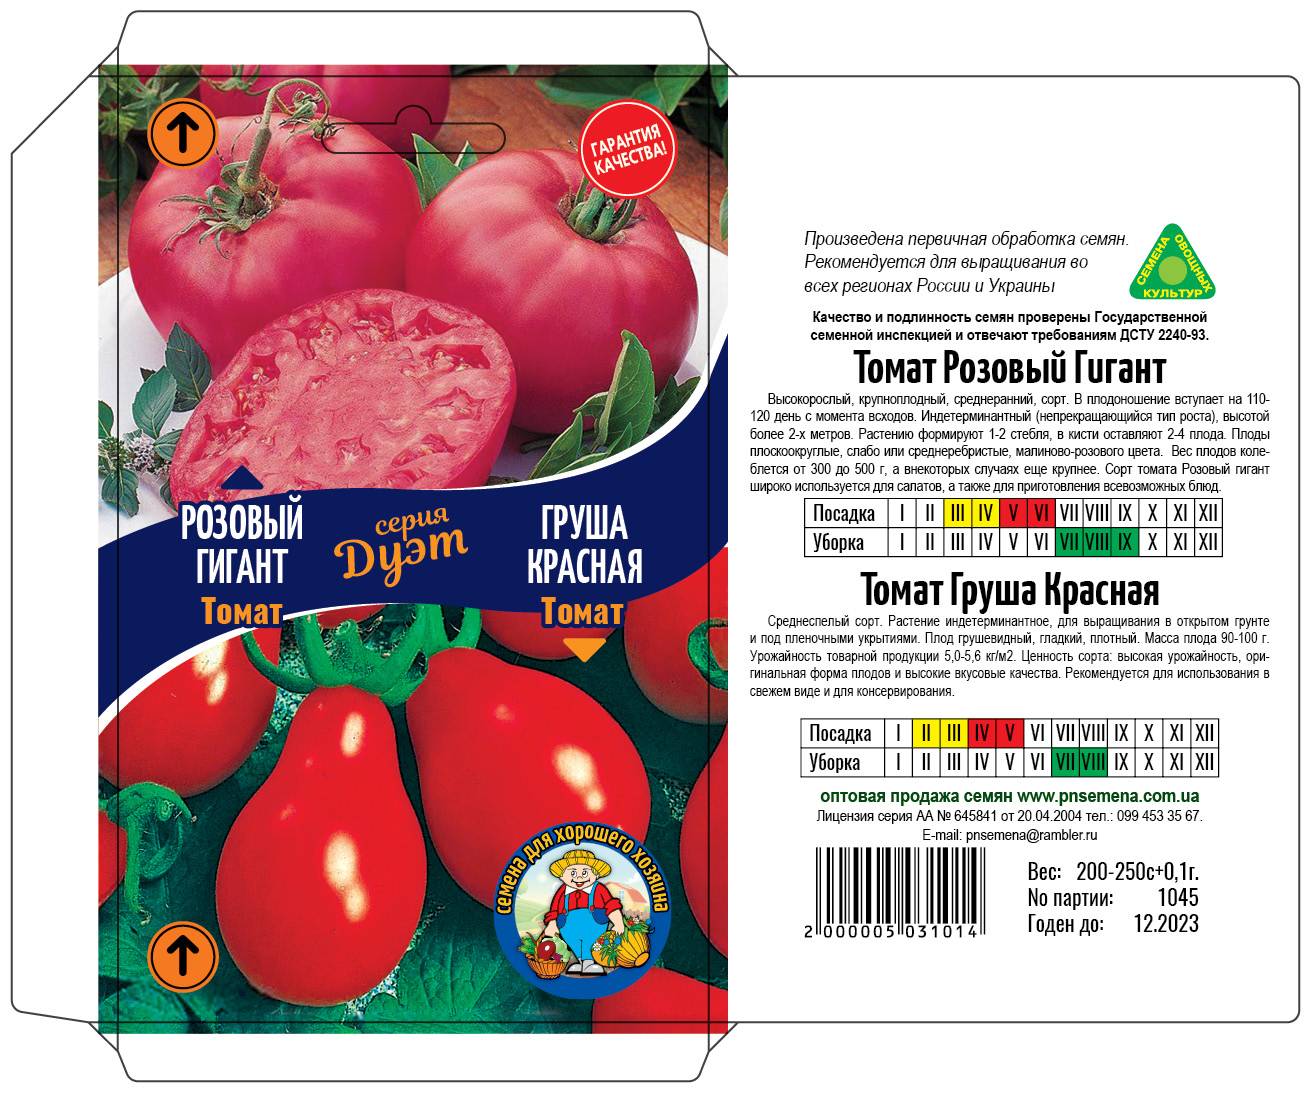 Низкорослые томаты – лучшие сорта помидор для открытого грунта